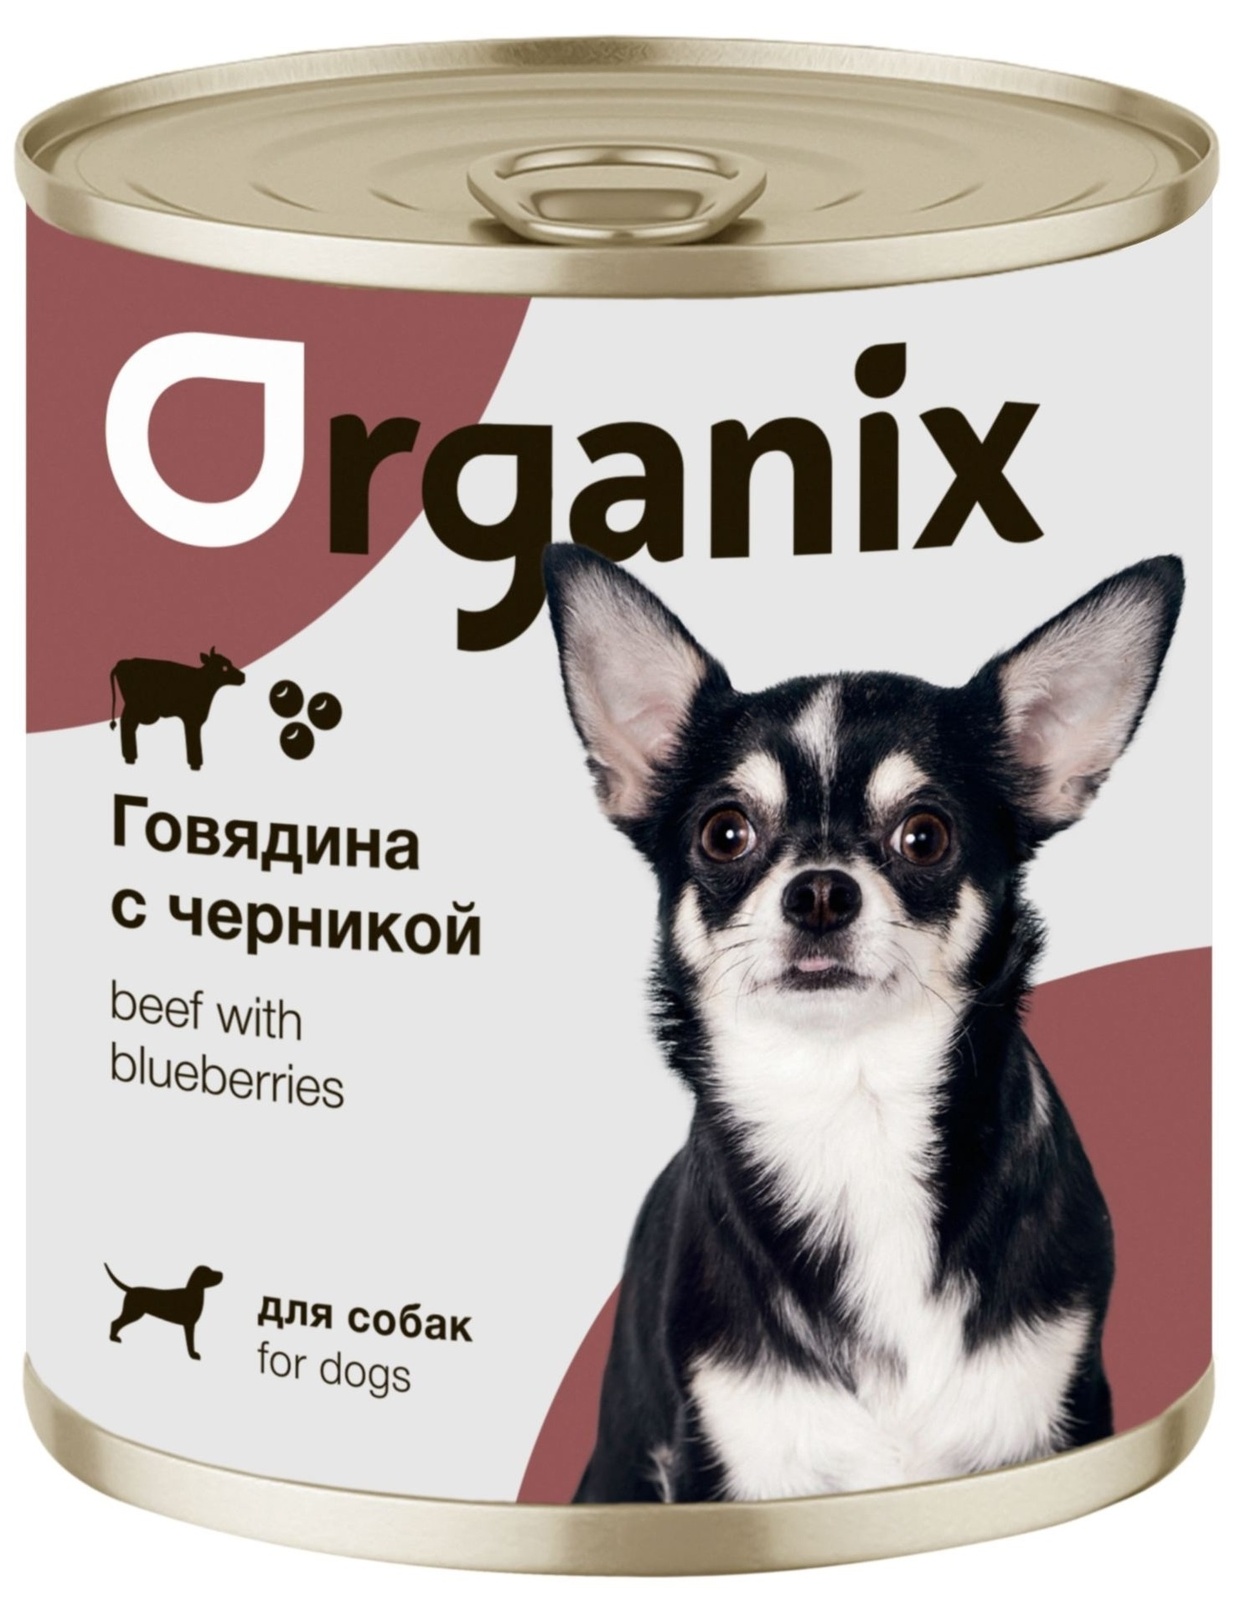 Organix консервы Organix консервы для собак Заливное из говядины с черникой (750 г) organix консервы organix консервы для собак ягненок с рубцом и морковью 750 г